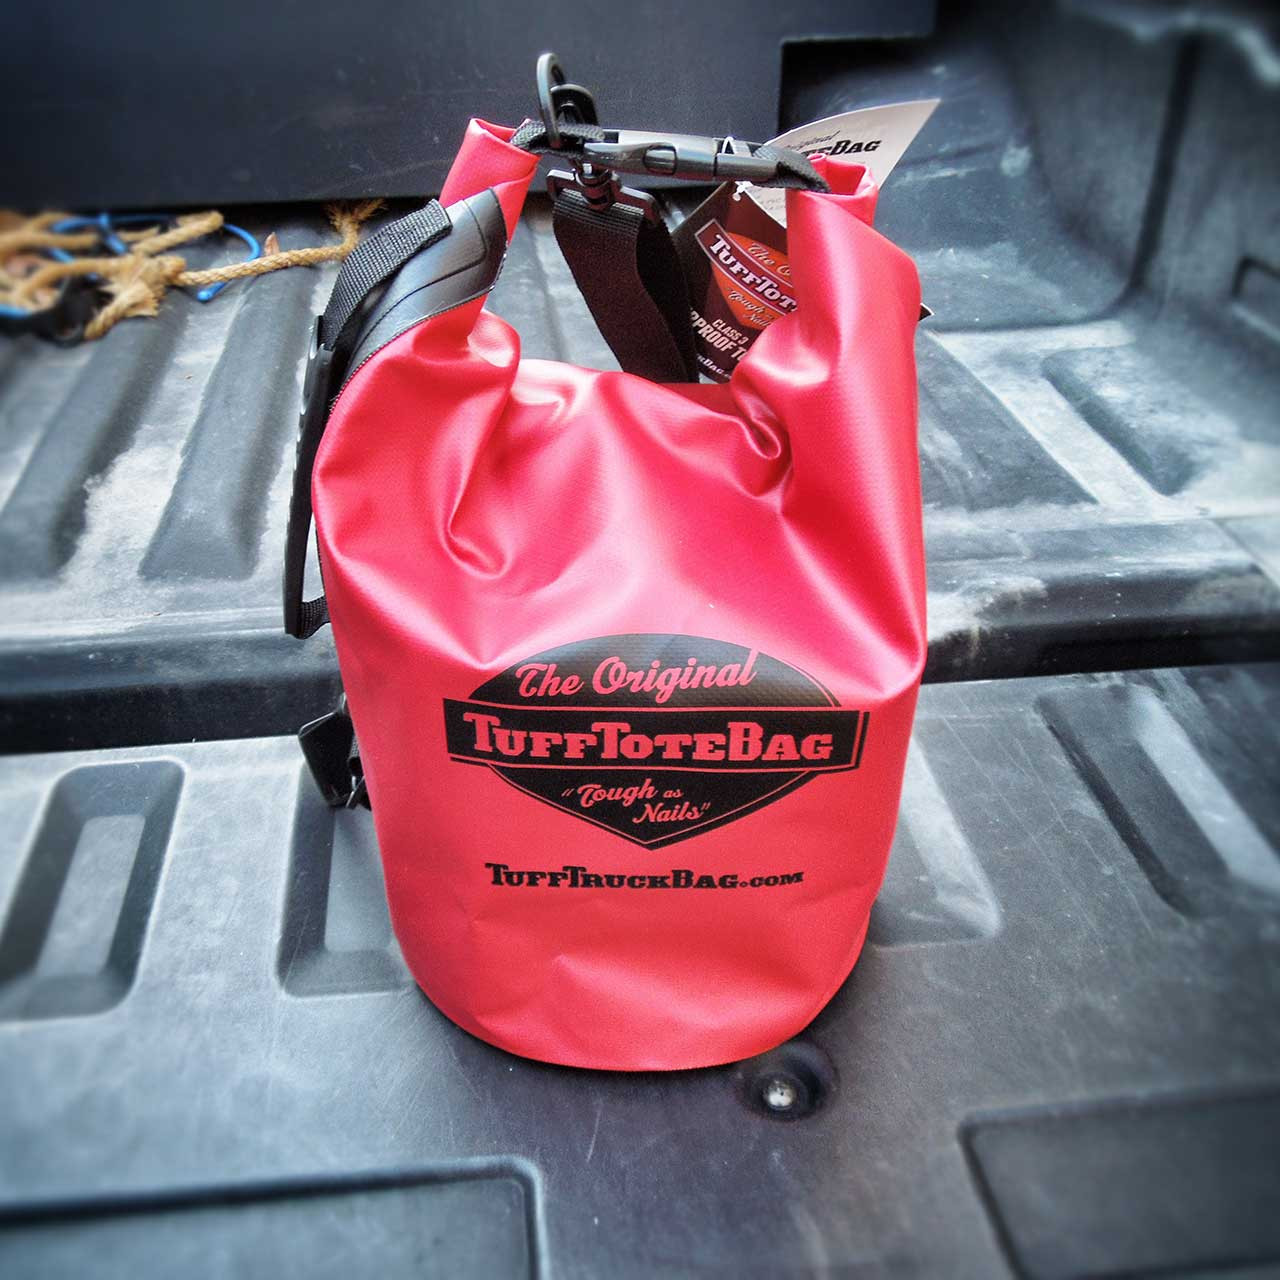 red waterproof bag